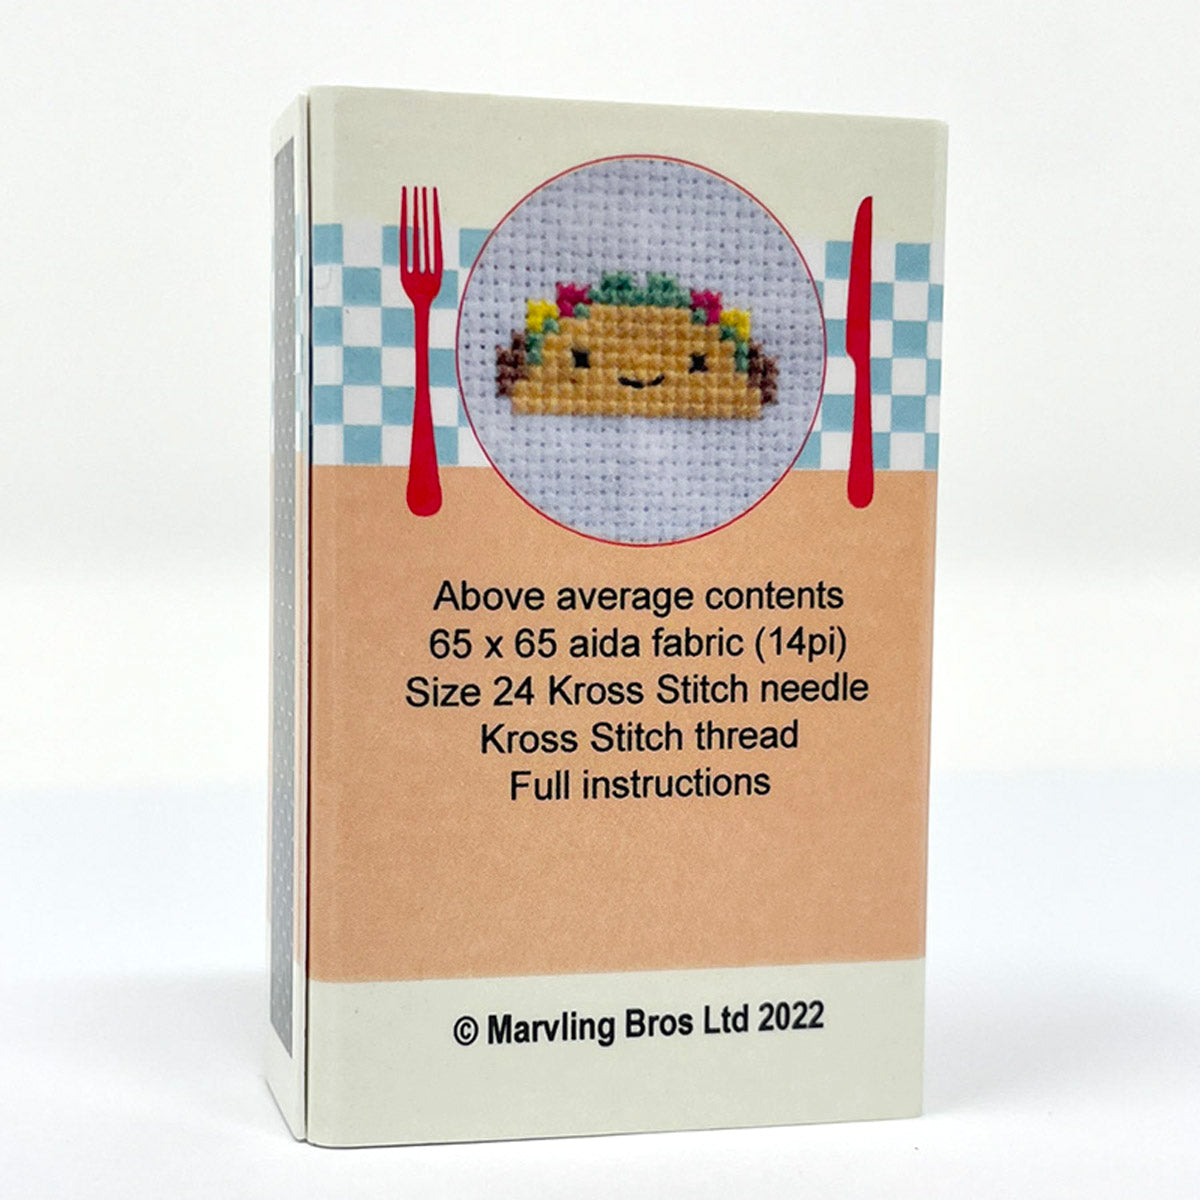 NEW // Kawaii Mini Cross Stitch Kit in a Matchbox